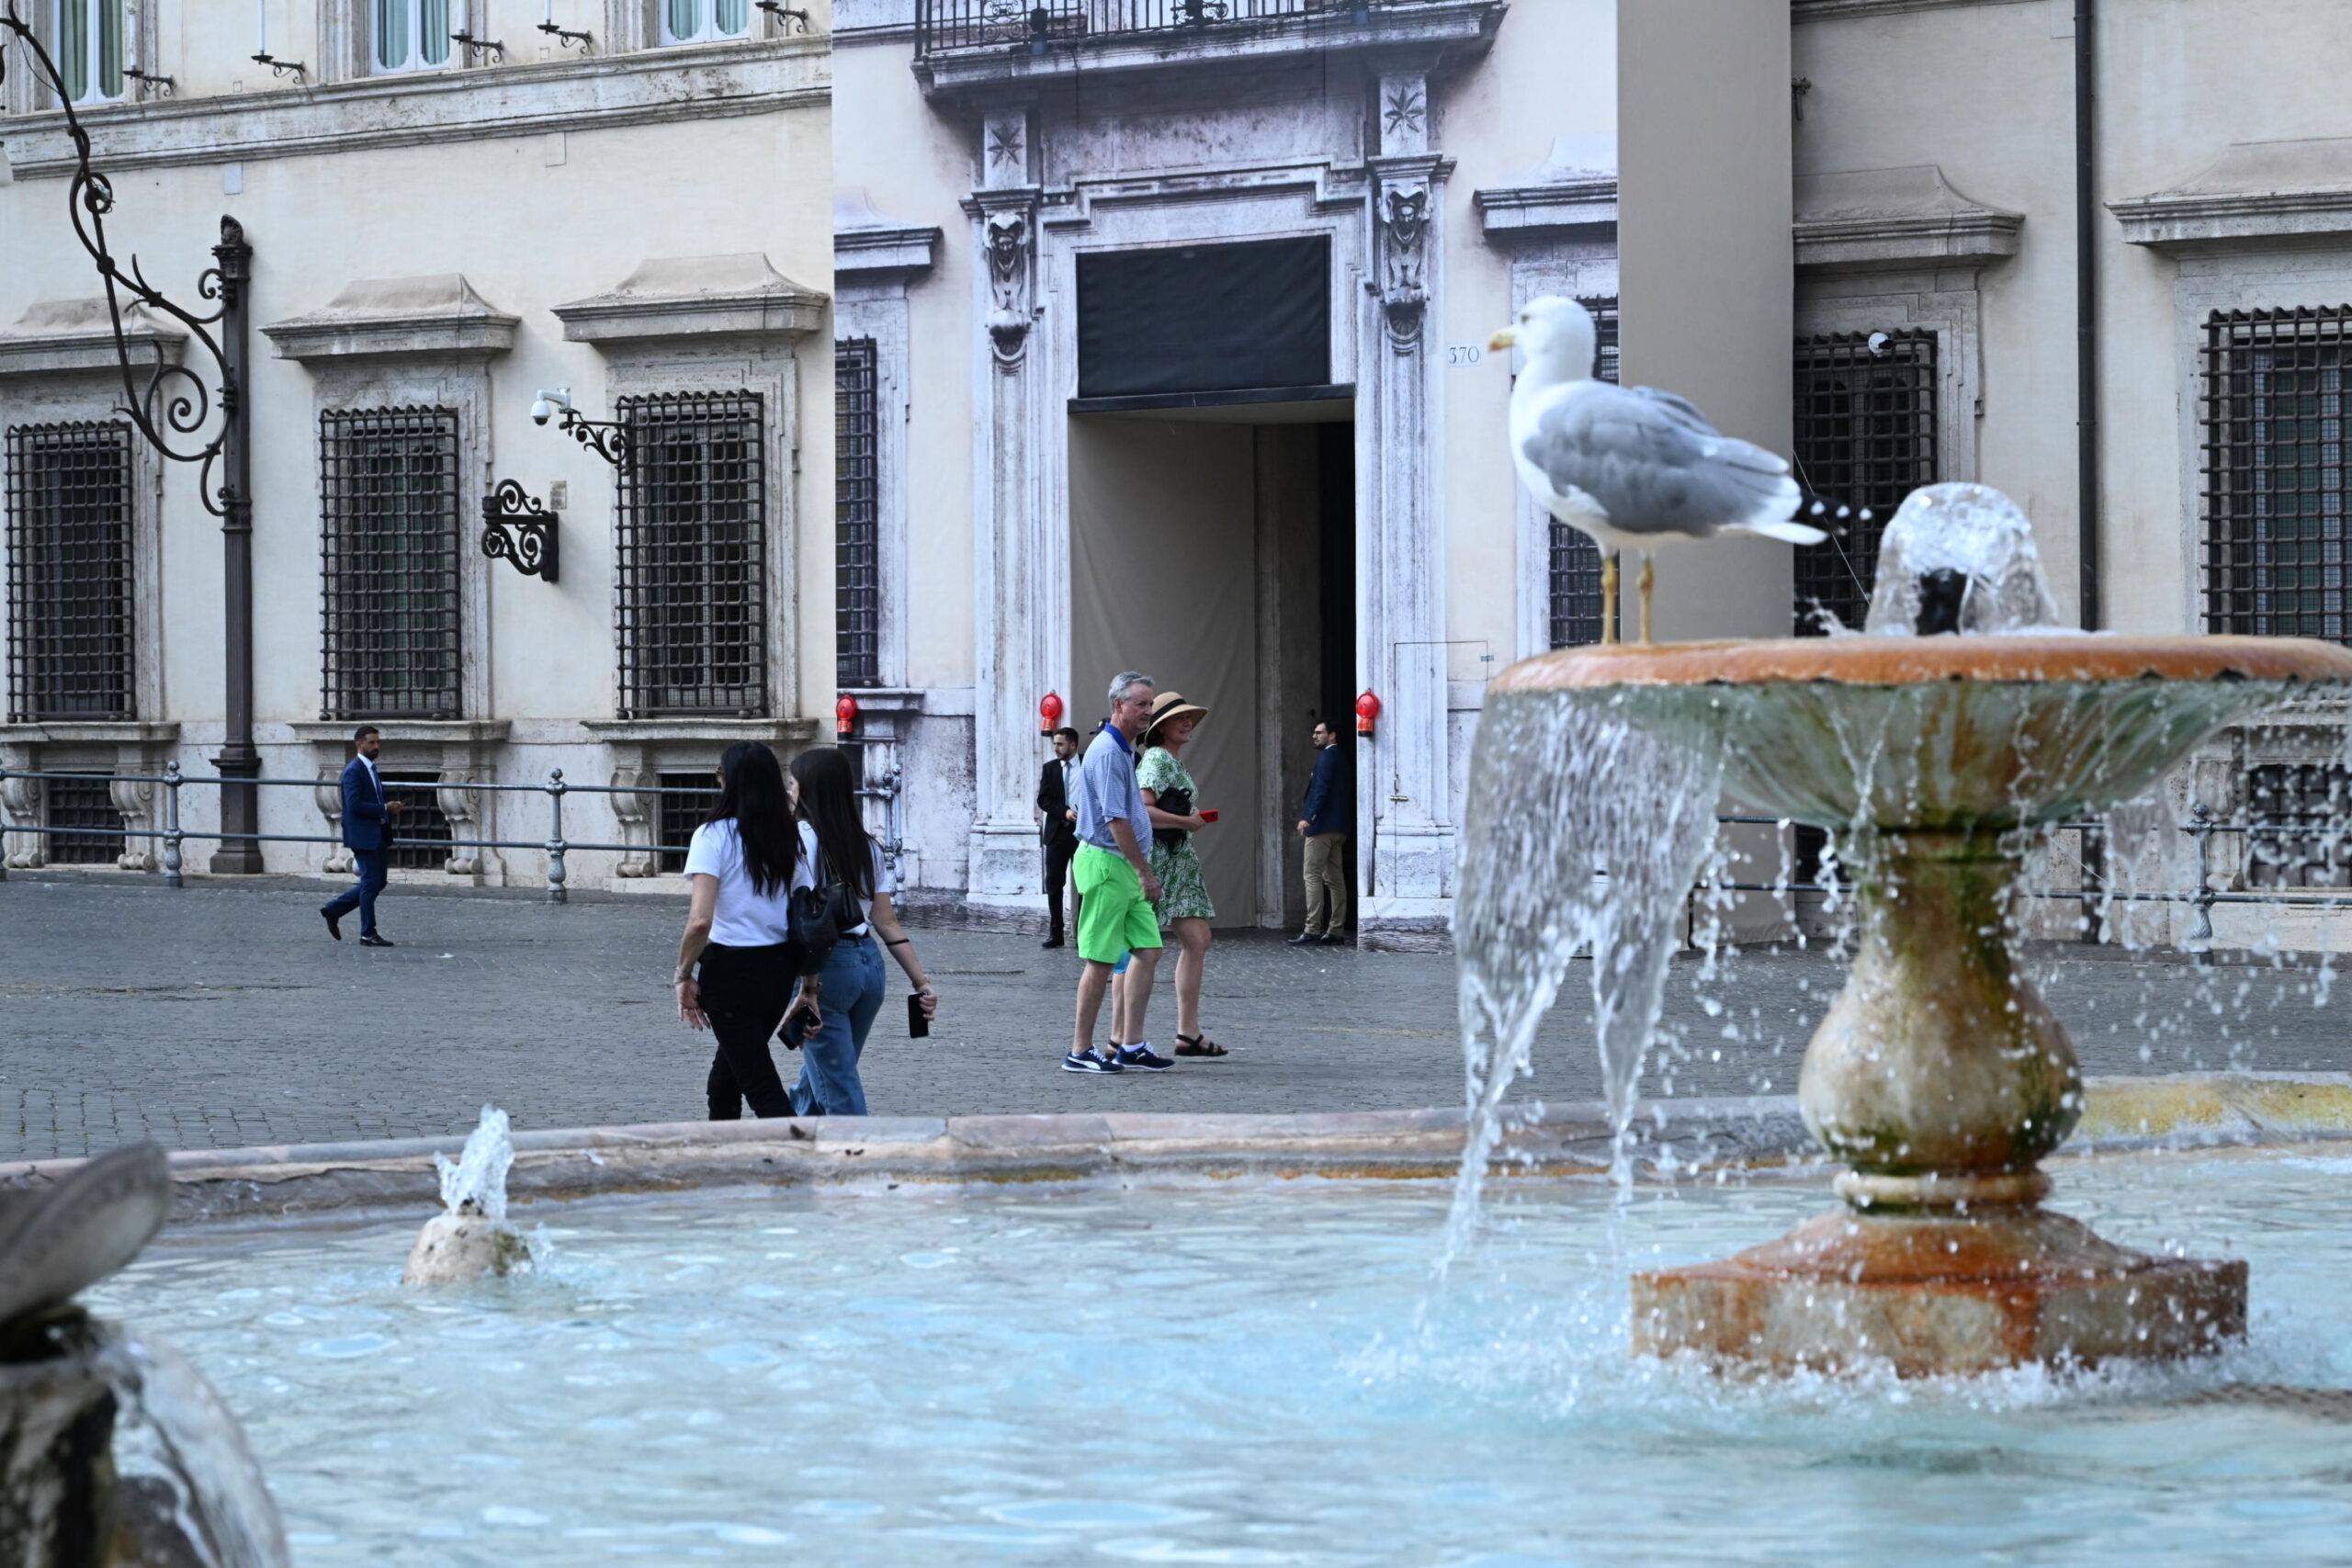 Rimosse dopo 10 anni le transenne davanti a palazzo Chigi: Piazza Colonna riapre al pubblico